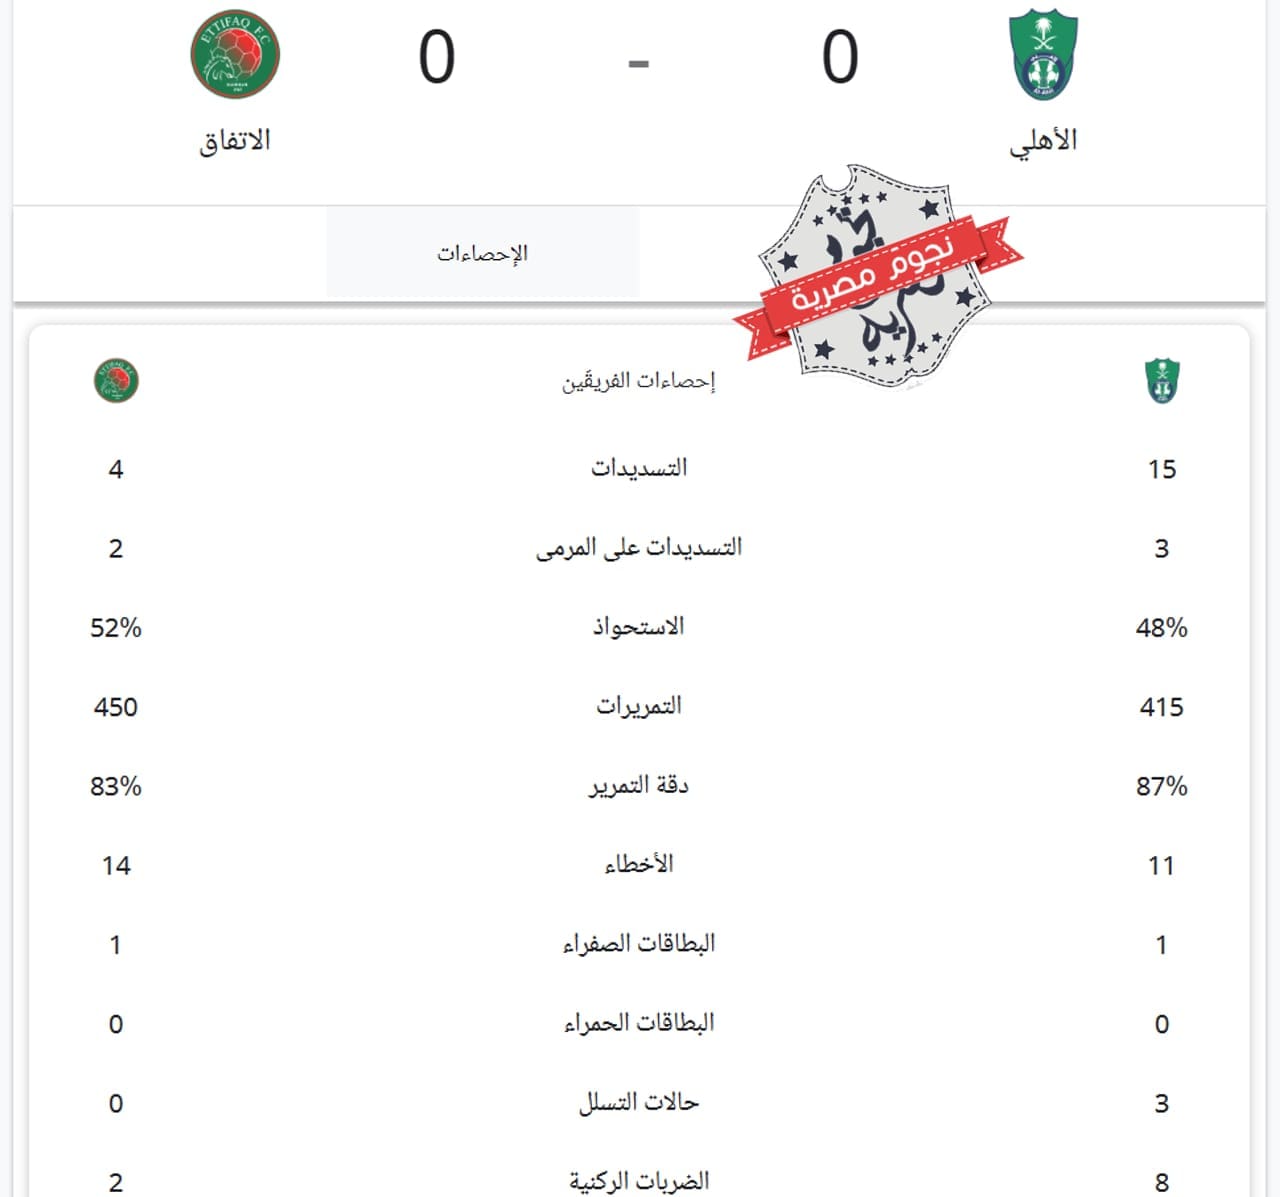 إحصائيات مباراة الأهلي والاتفاق في الدوري السعودي كاملة (مصدر الصورة. إحصائيات جوجل)